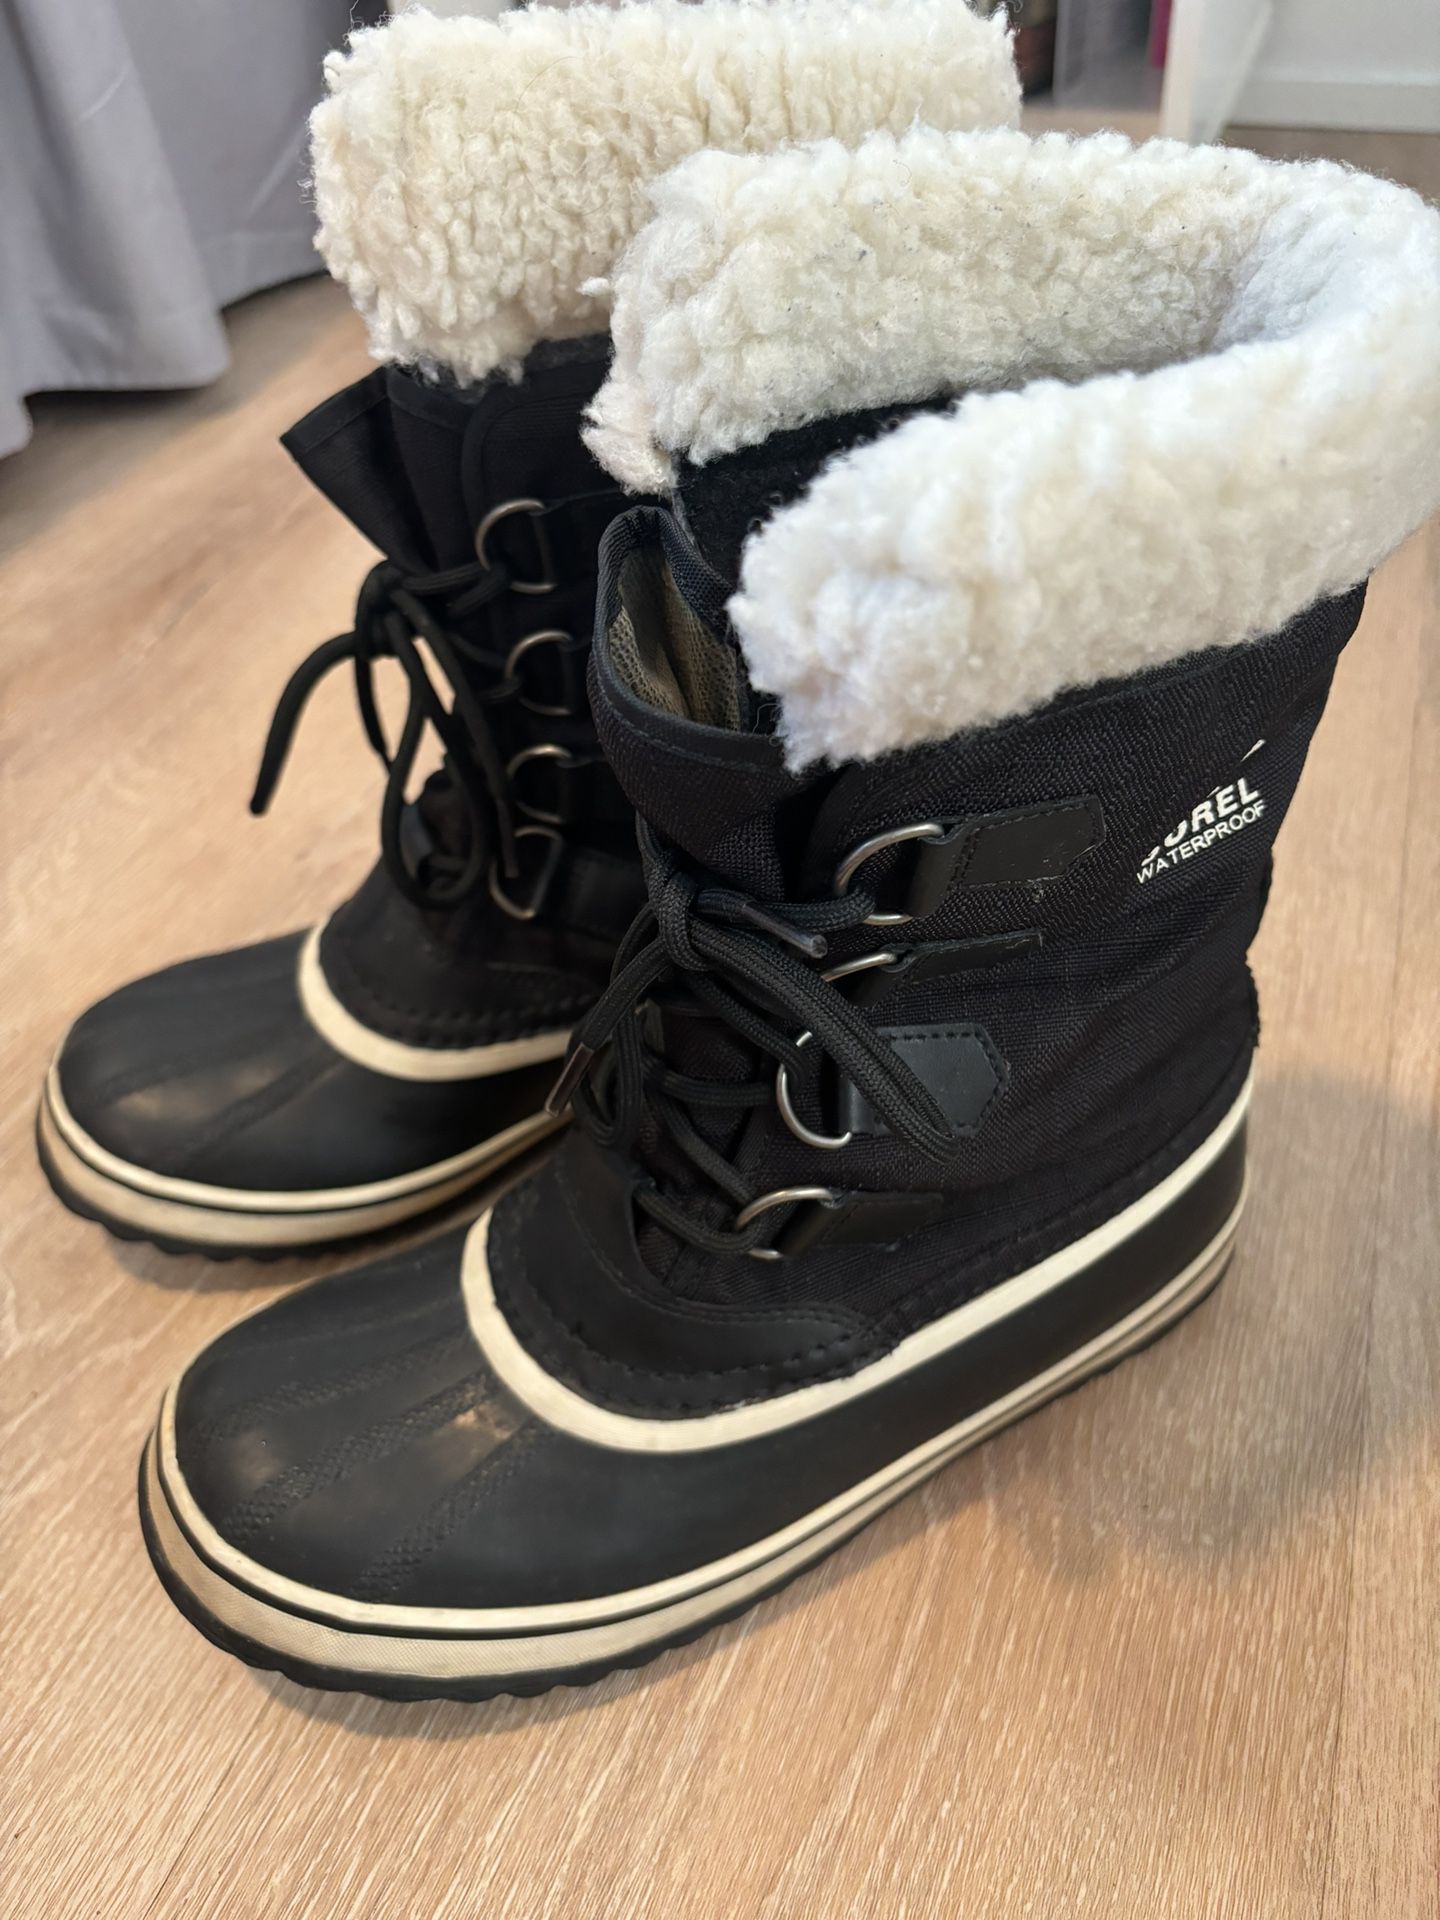 Sorel Women’s Winter Carnival Boots Size 8